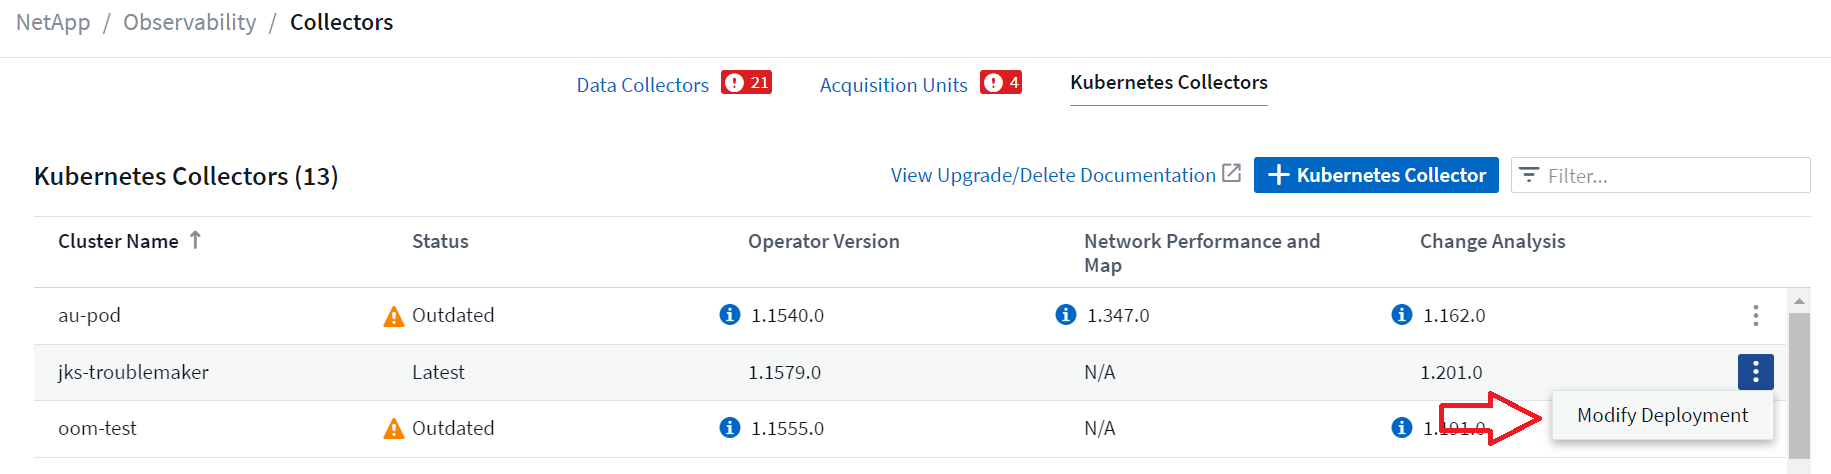 Modificar el menú de implementación en la página de la lista de recopiladores de Kubernetes